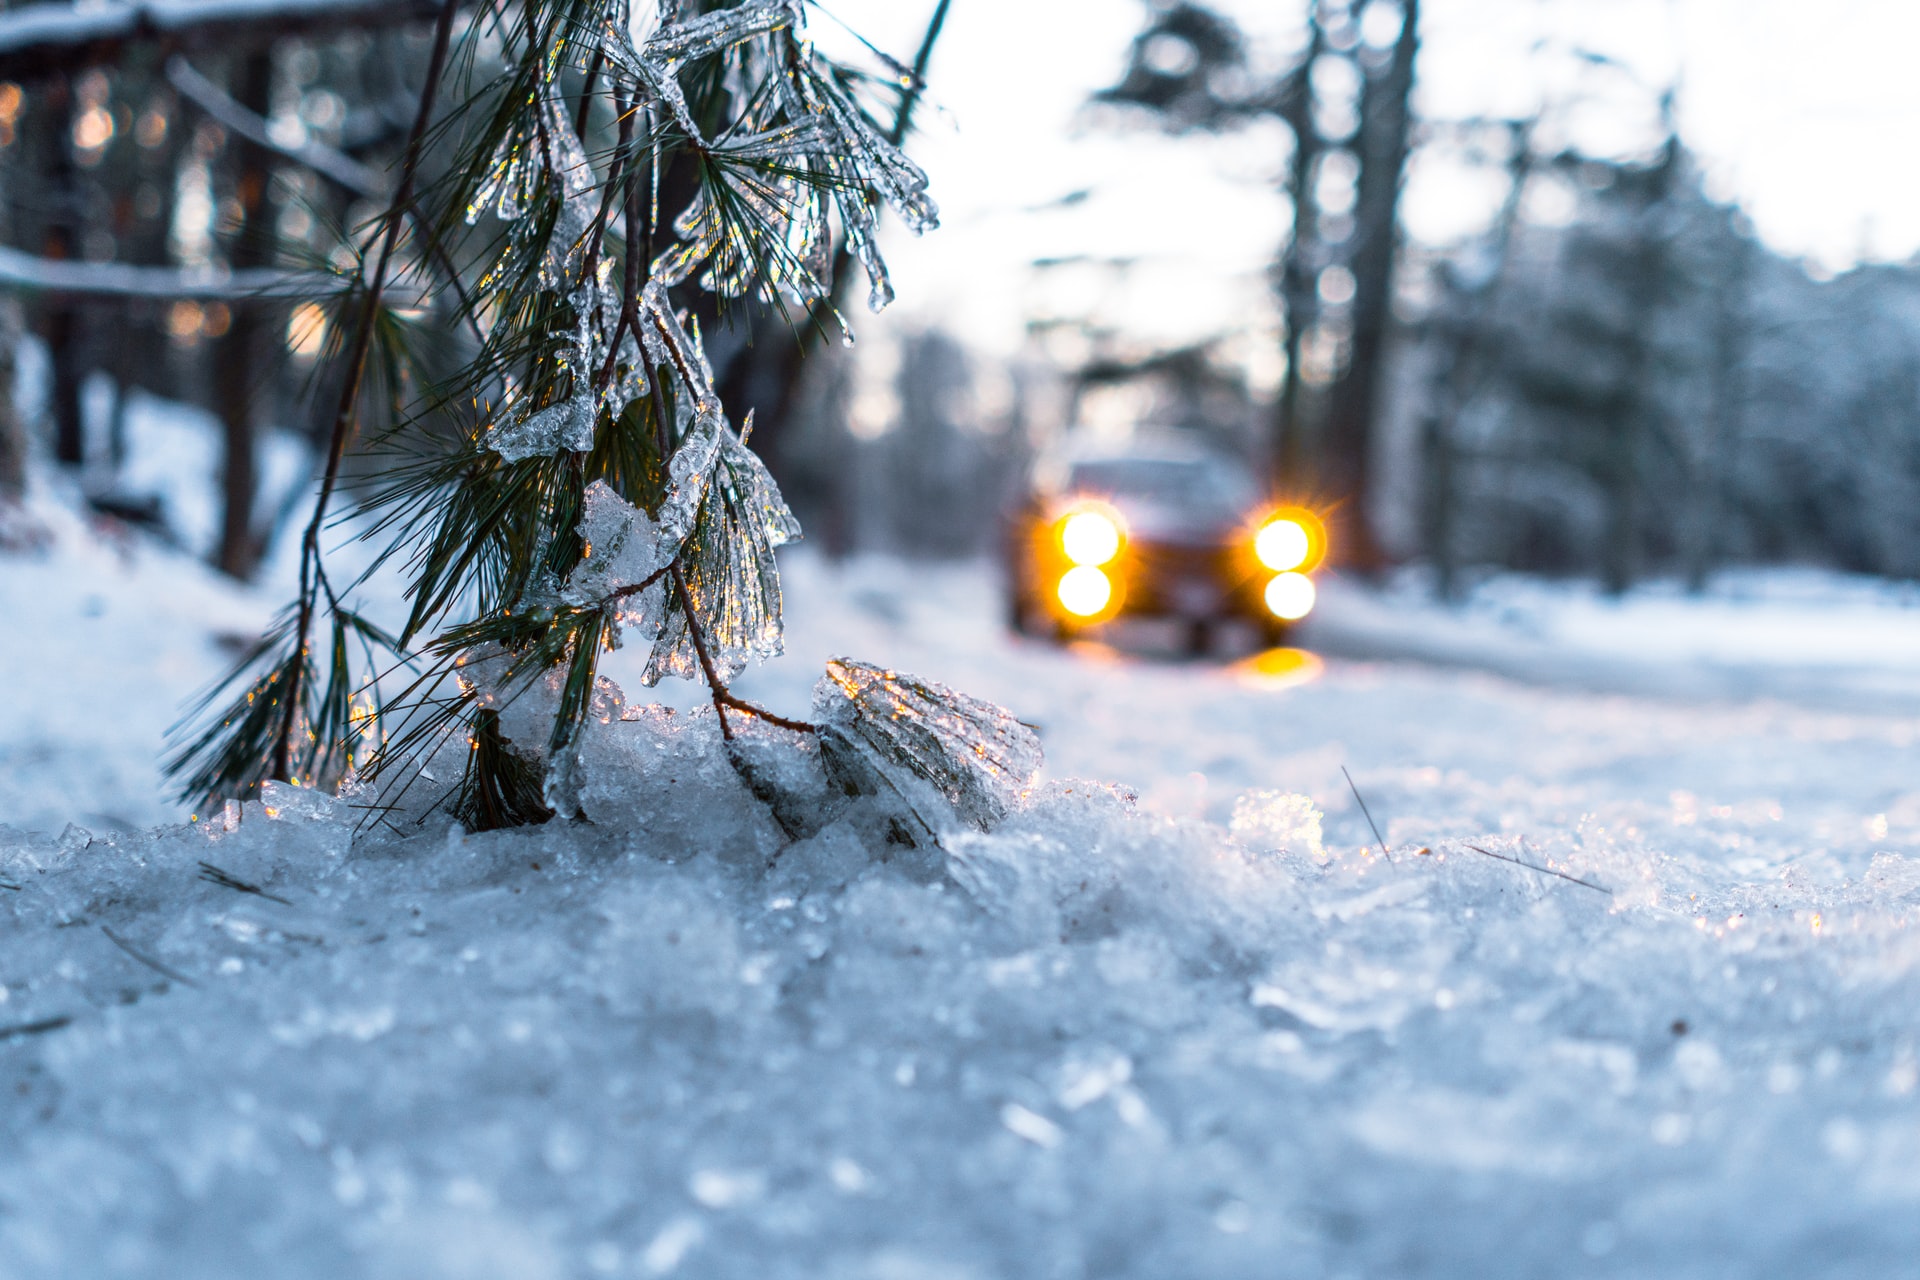 Zasady jazdy zimą – na co powinieneś zwrócić uwagę?